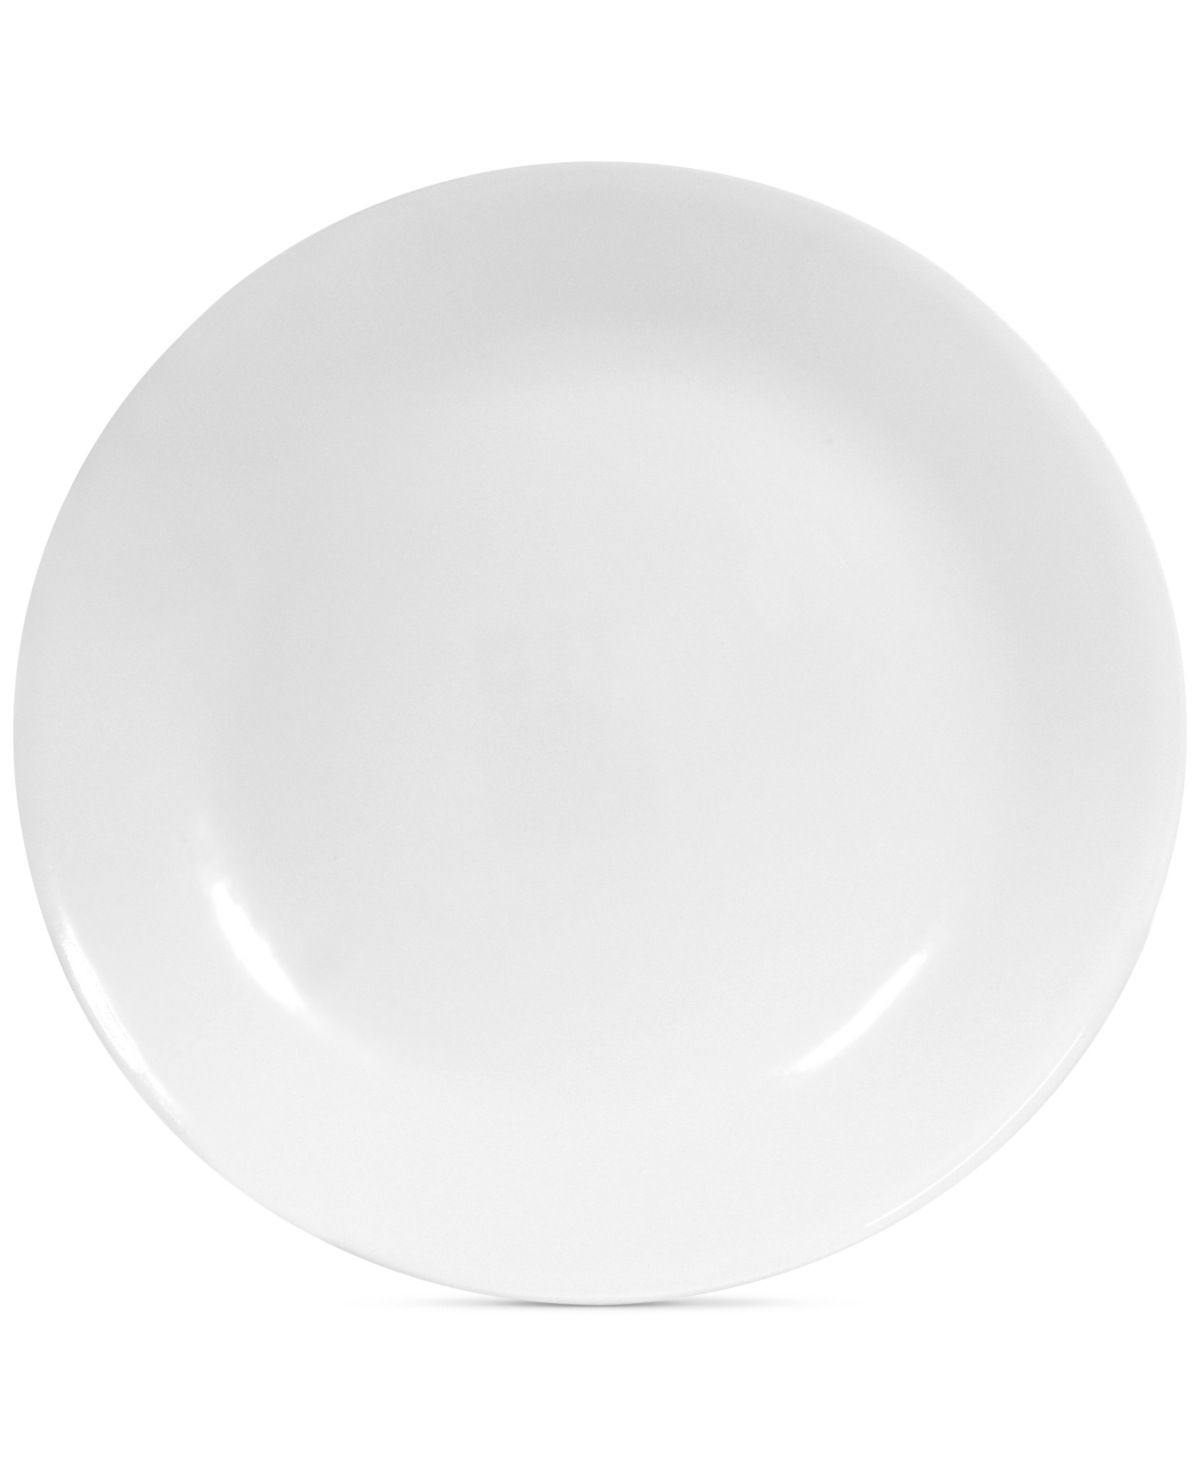 White Dinner Plate - White